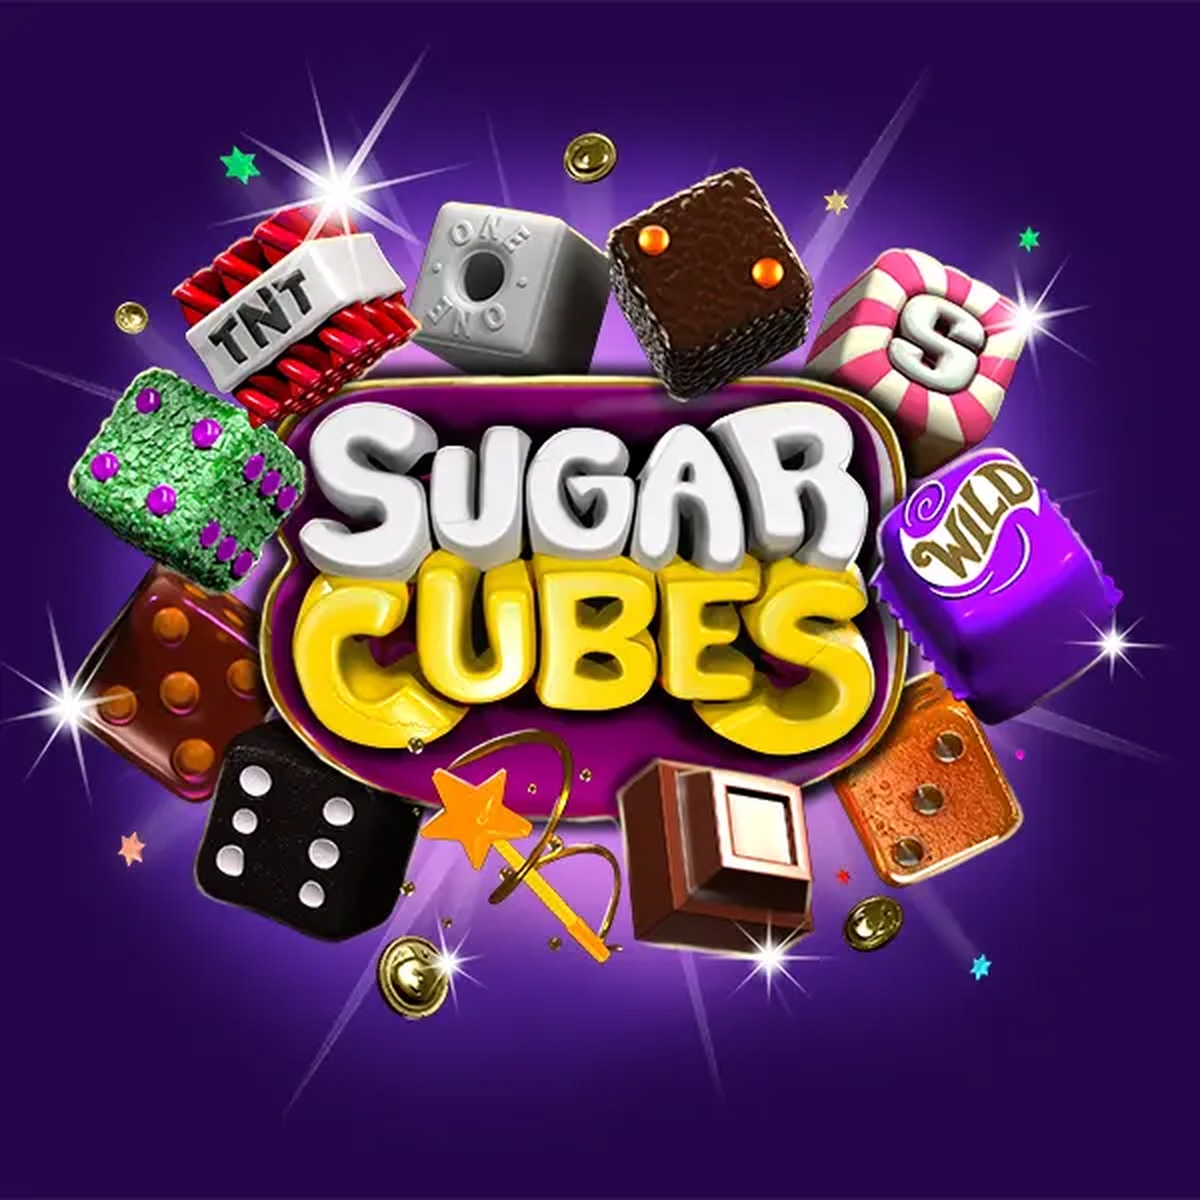 Sugar Cubes demo